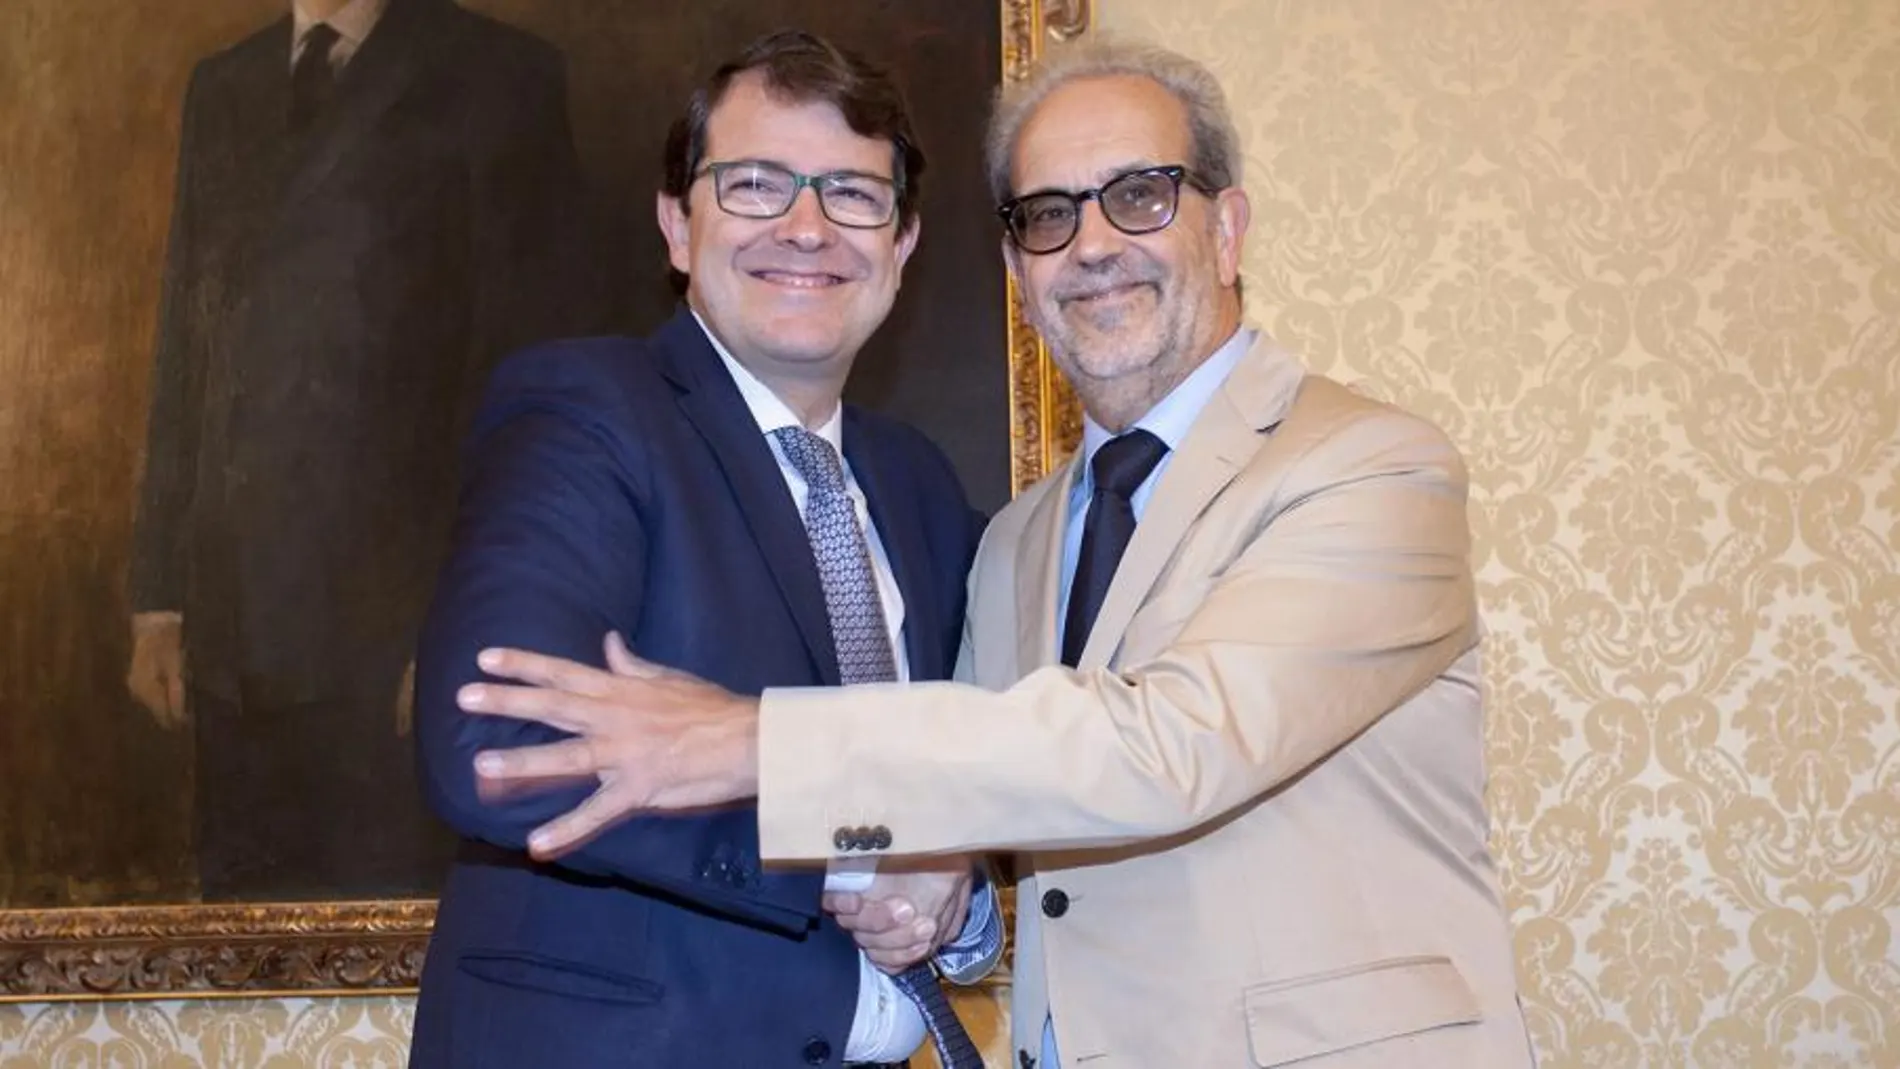 El alcalde Alfonso Fernández Mañueco y el rector de la Universidad de Salamanca, Daniel Hernández Ruipérez, suscriben el acuerdo de colaboración